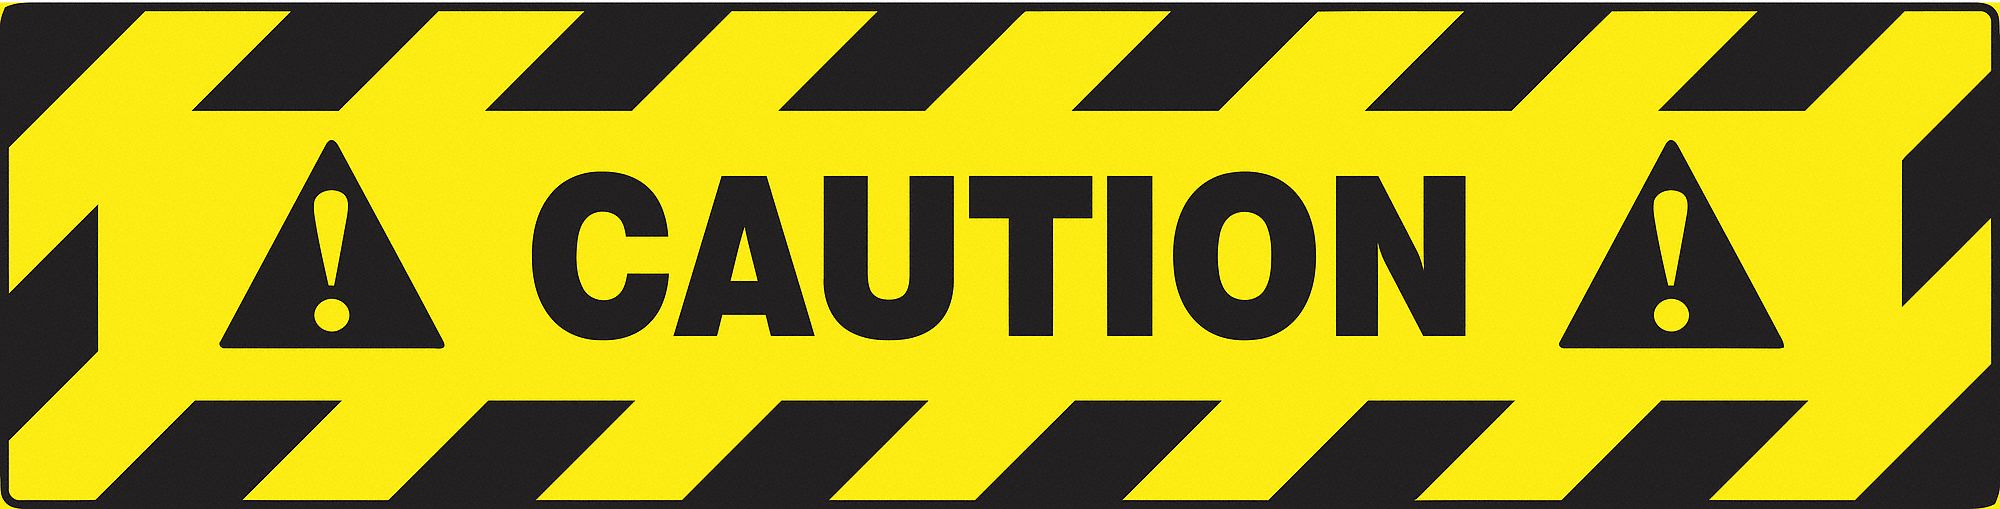 Floor Sign,Caution,6 x 24 In.